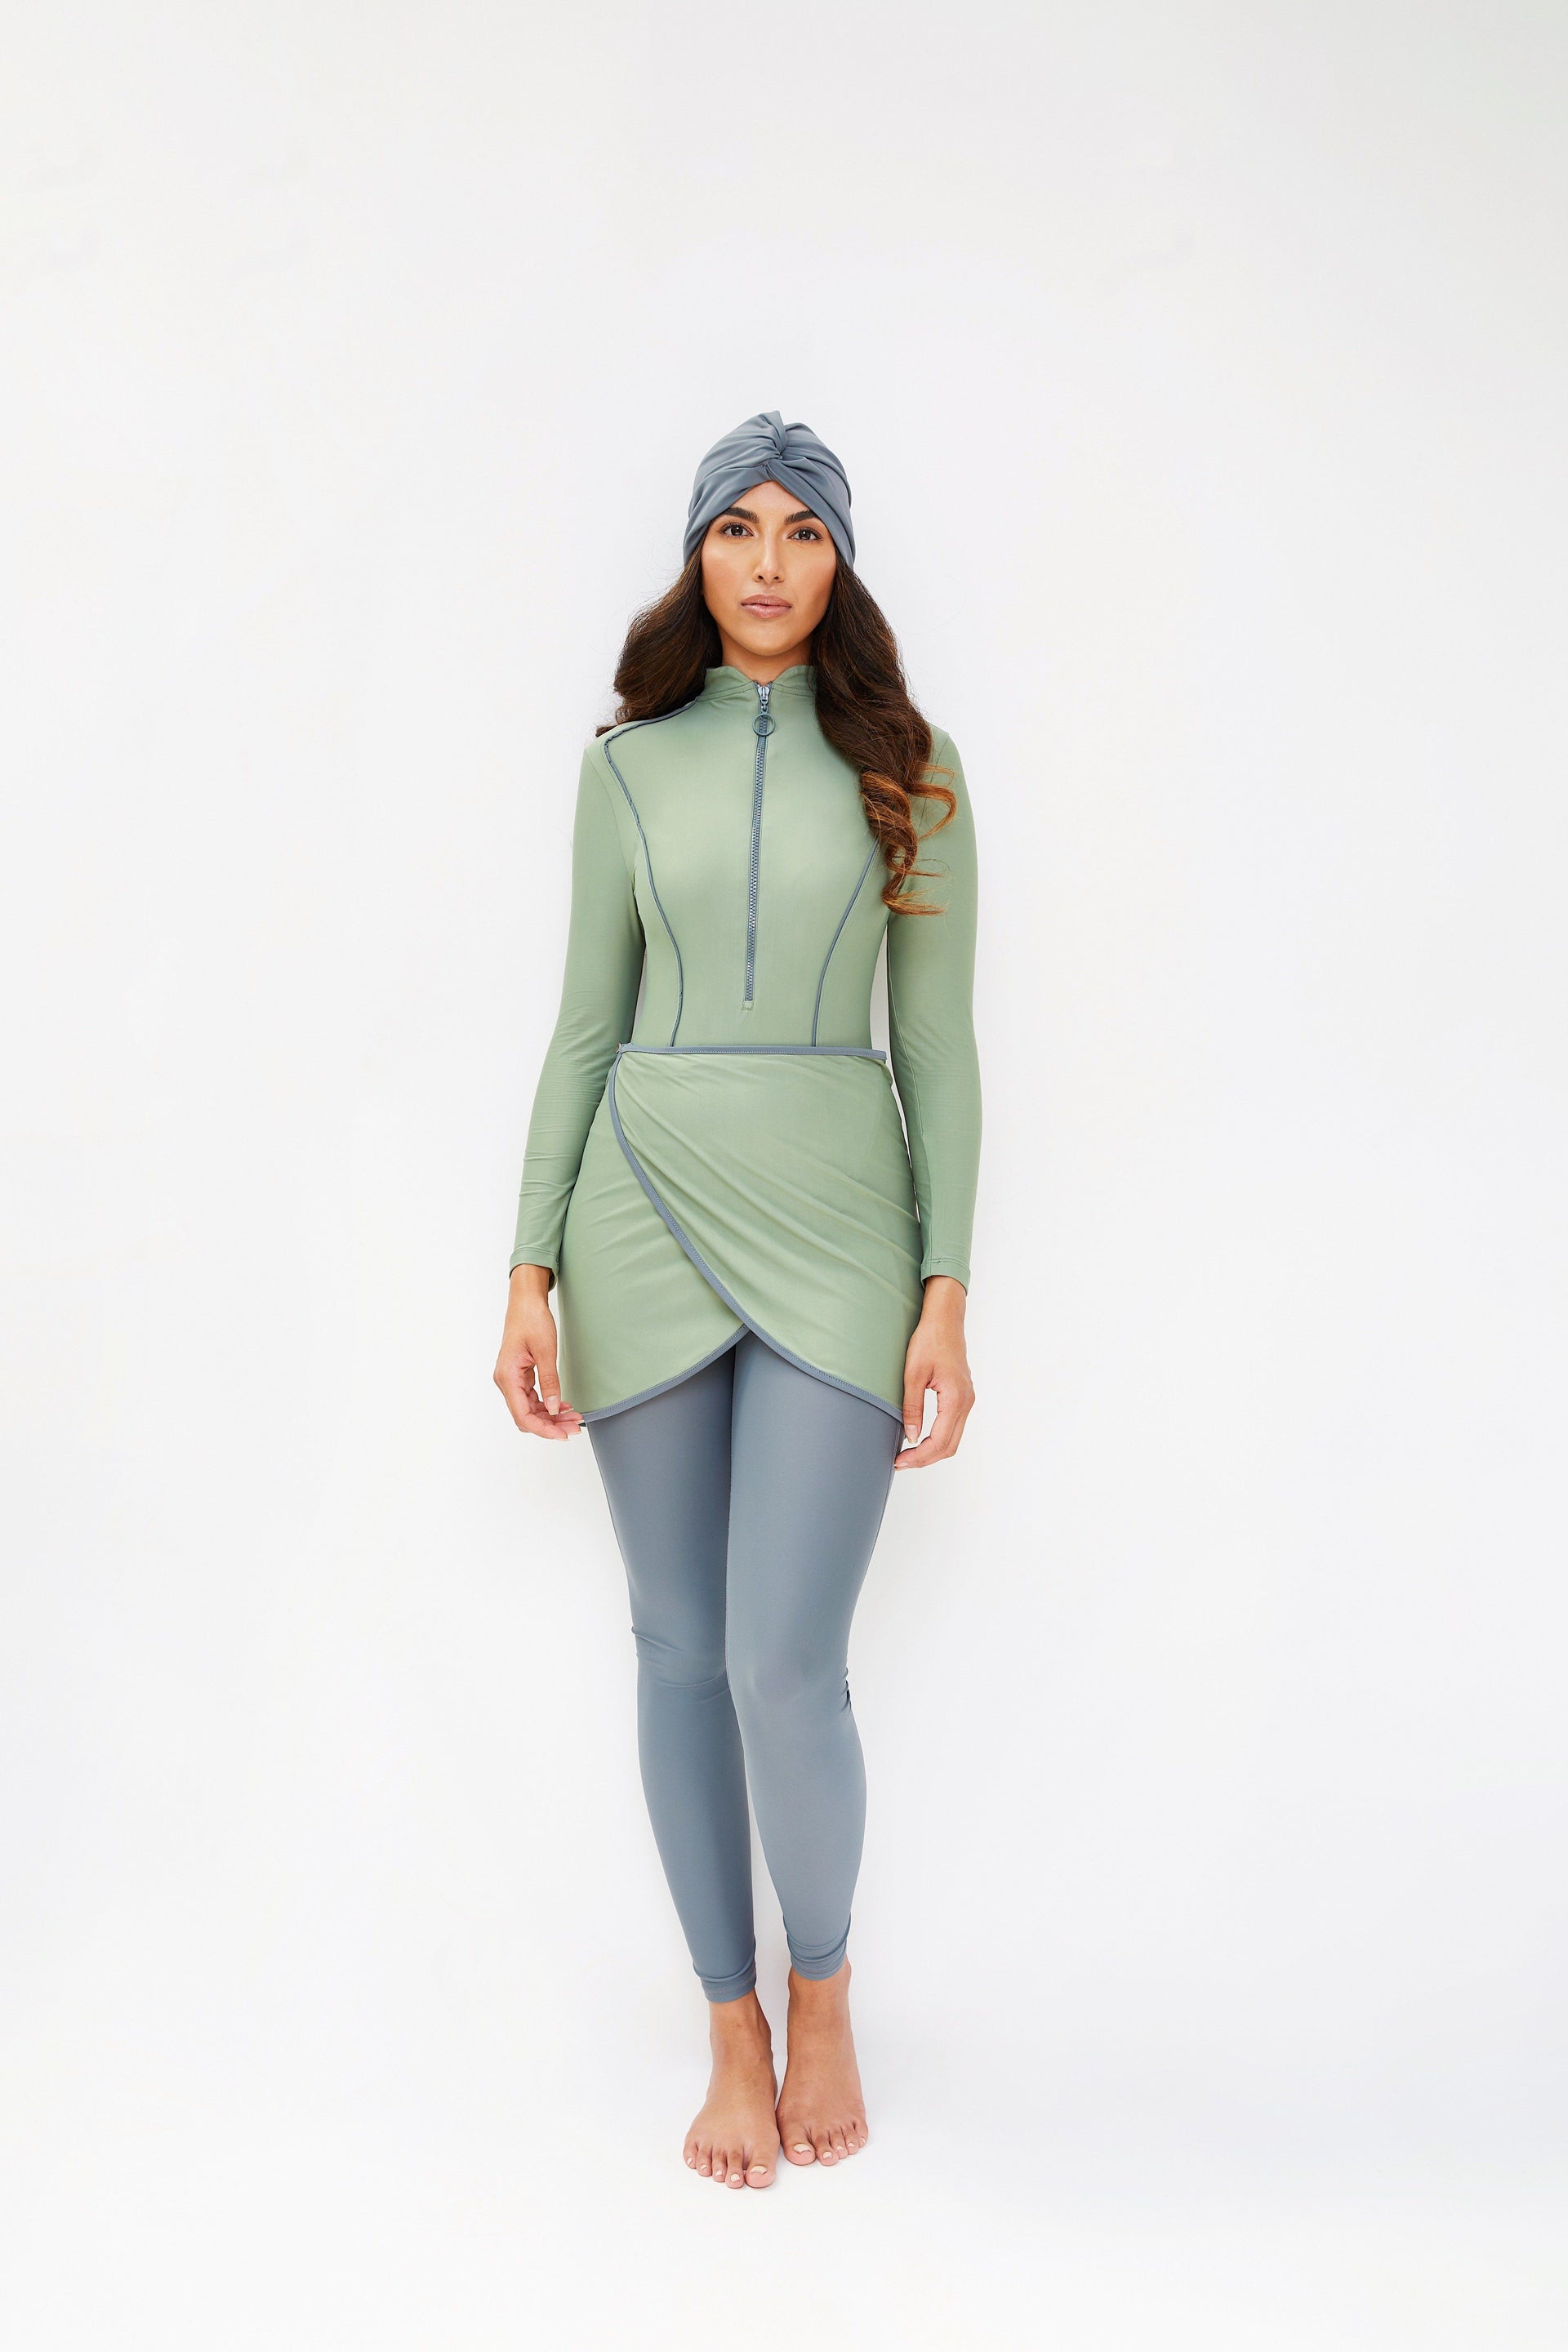 SOFIA - PASTEL GREEN // Buy Modest Swim Dress By LYRA Swimwear